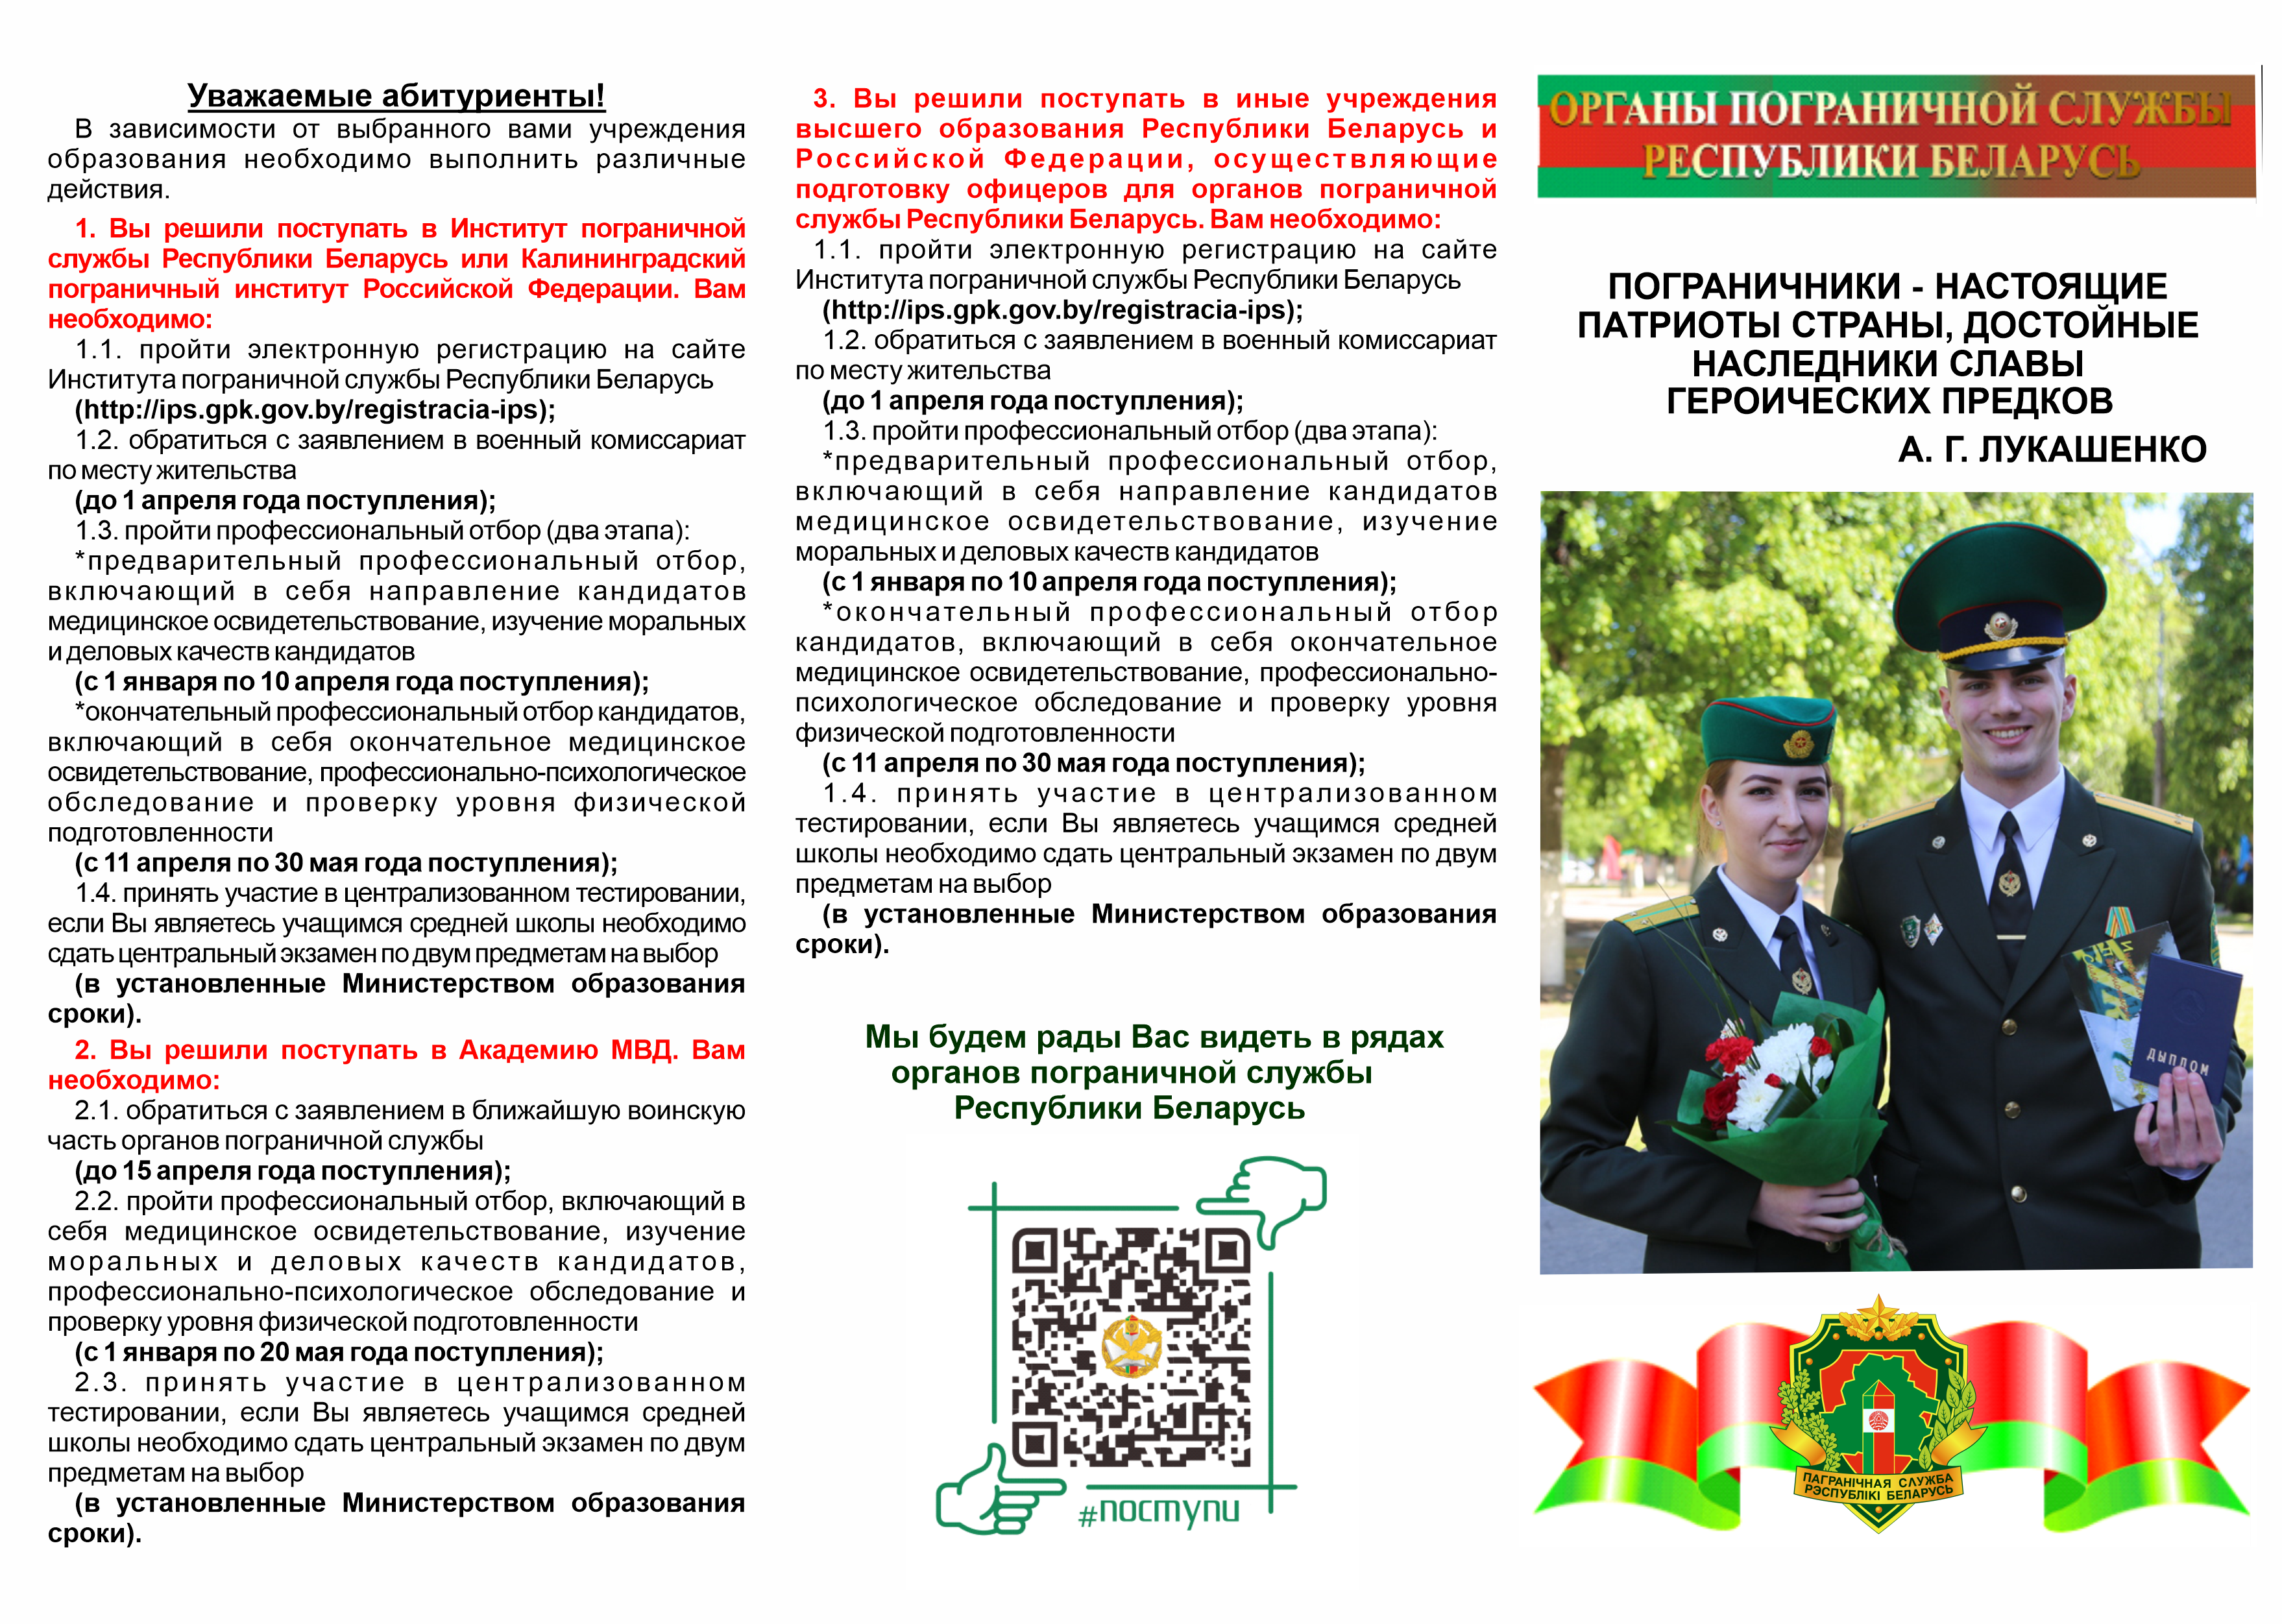 Военные учебные заведения Республики Беларусь приглашают